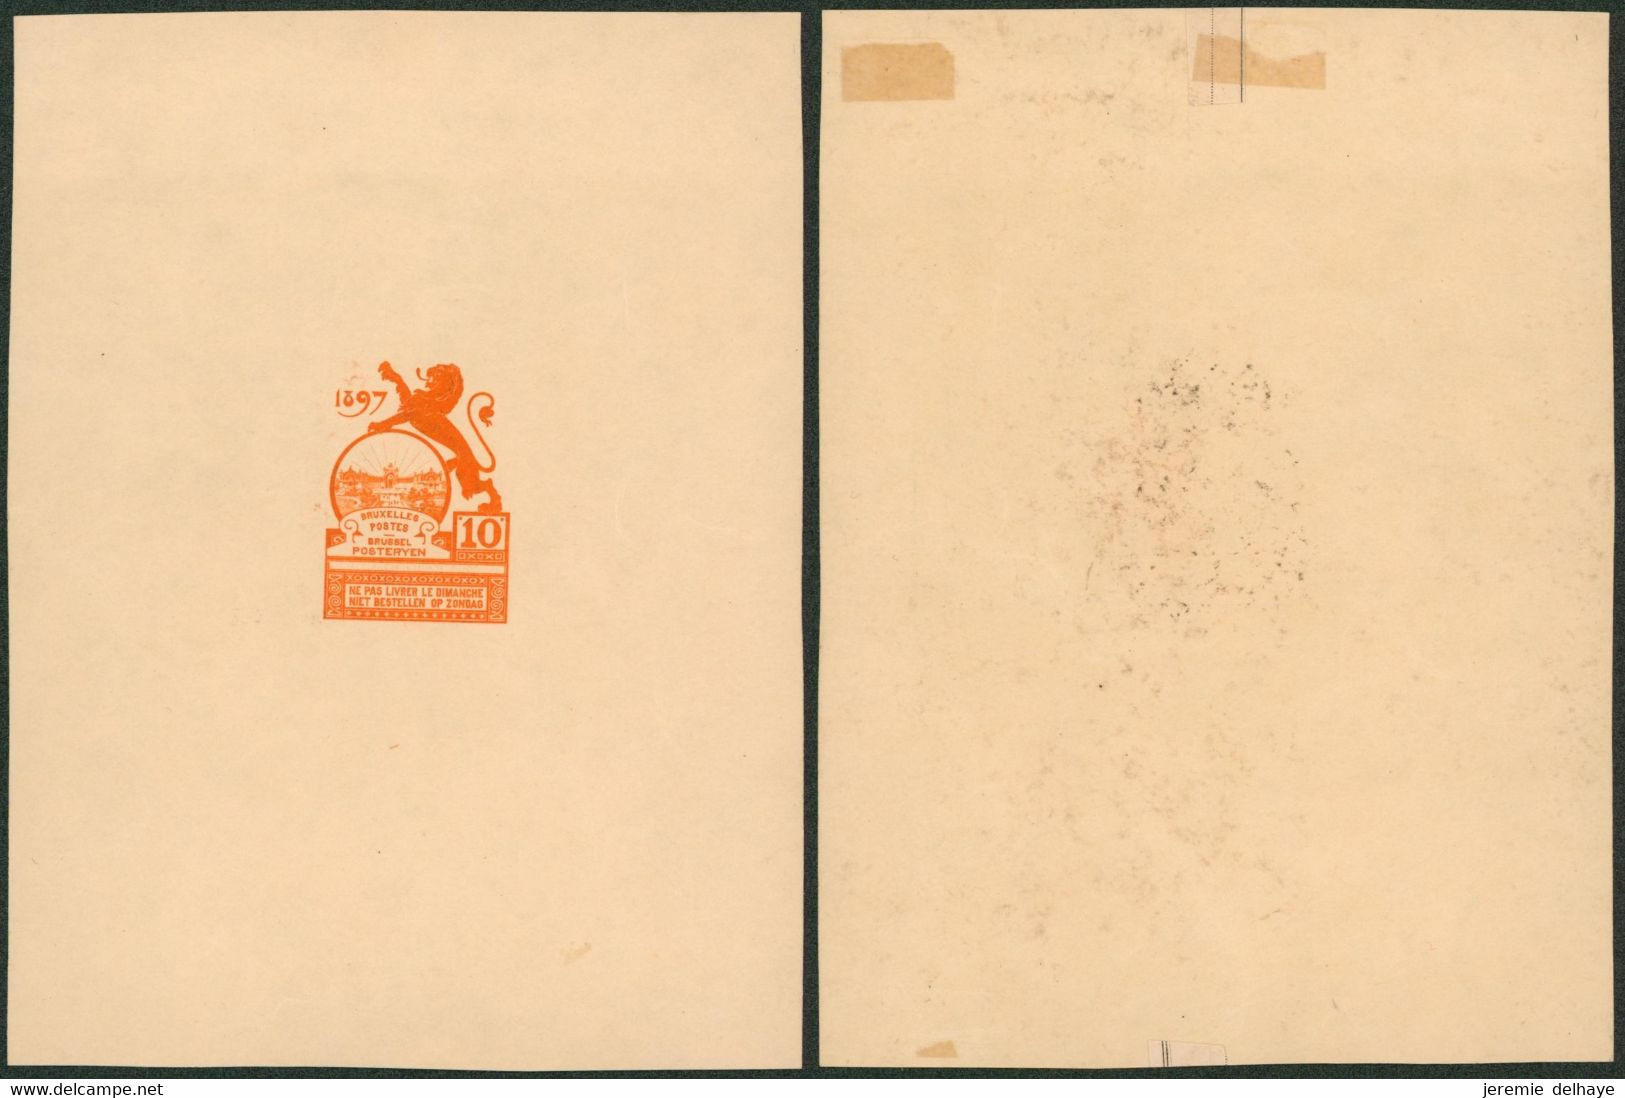 Essai - Proposition Du Peintre Louis Titz (Bruxelles Expositions 1897) Sur Papier Carton Crème (1 Couleur) : STES 2220 - Proofs & Reprints